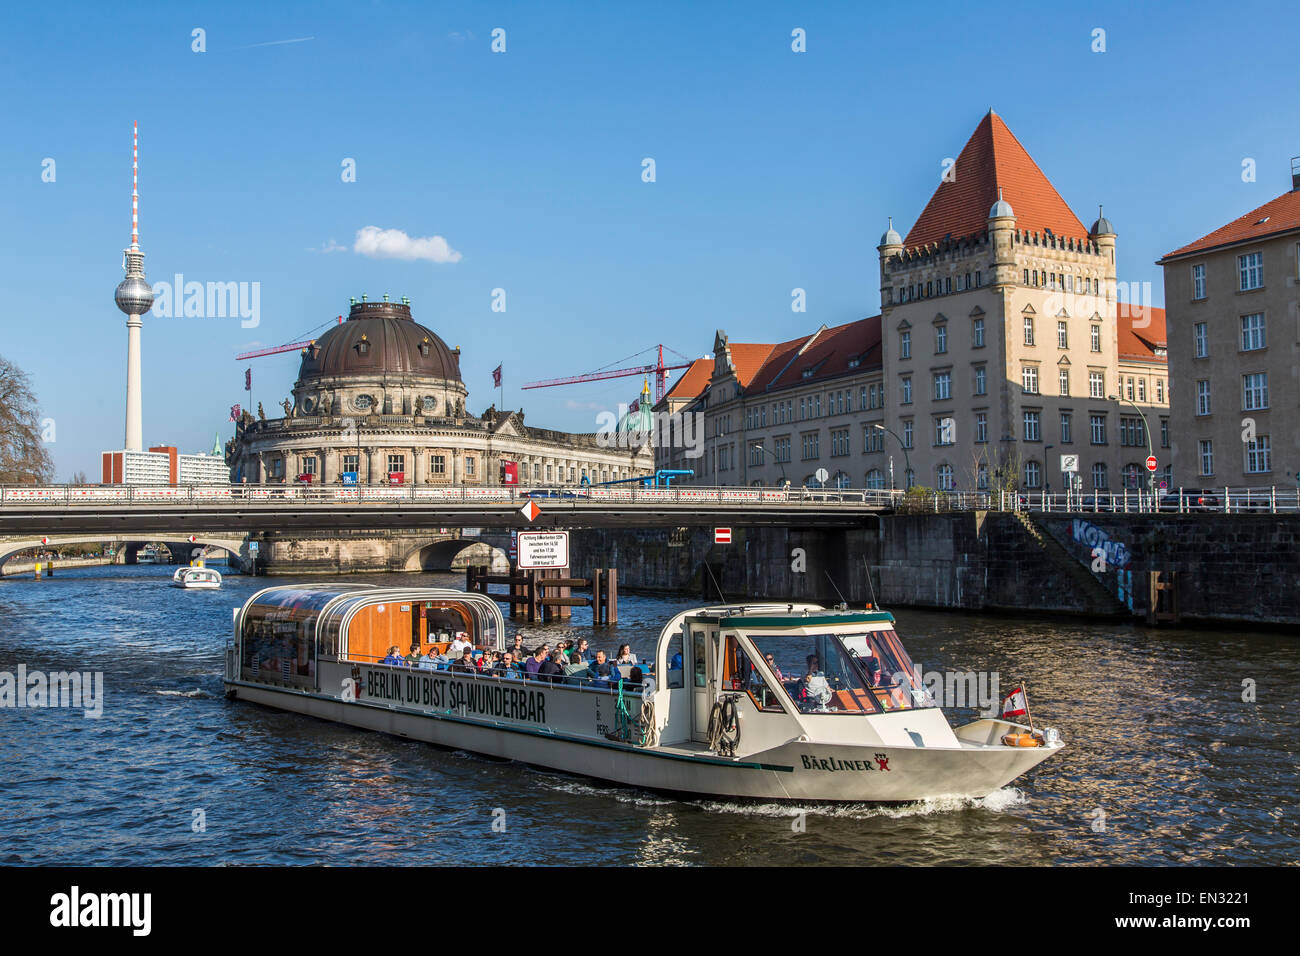 Les navires de croisière, excursions touristiques sur la rivière Spree, dans le centre de Berlin Banque D'Images